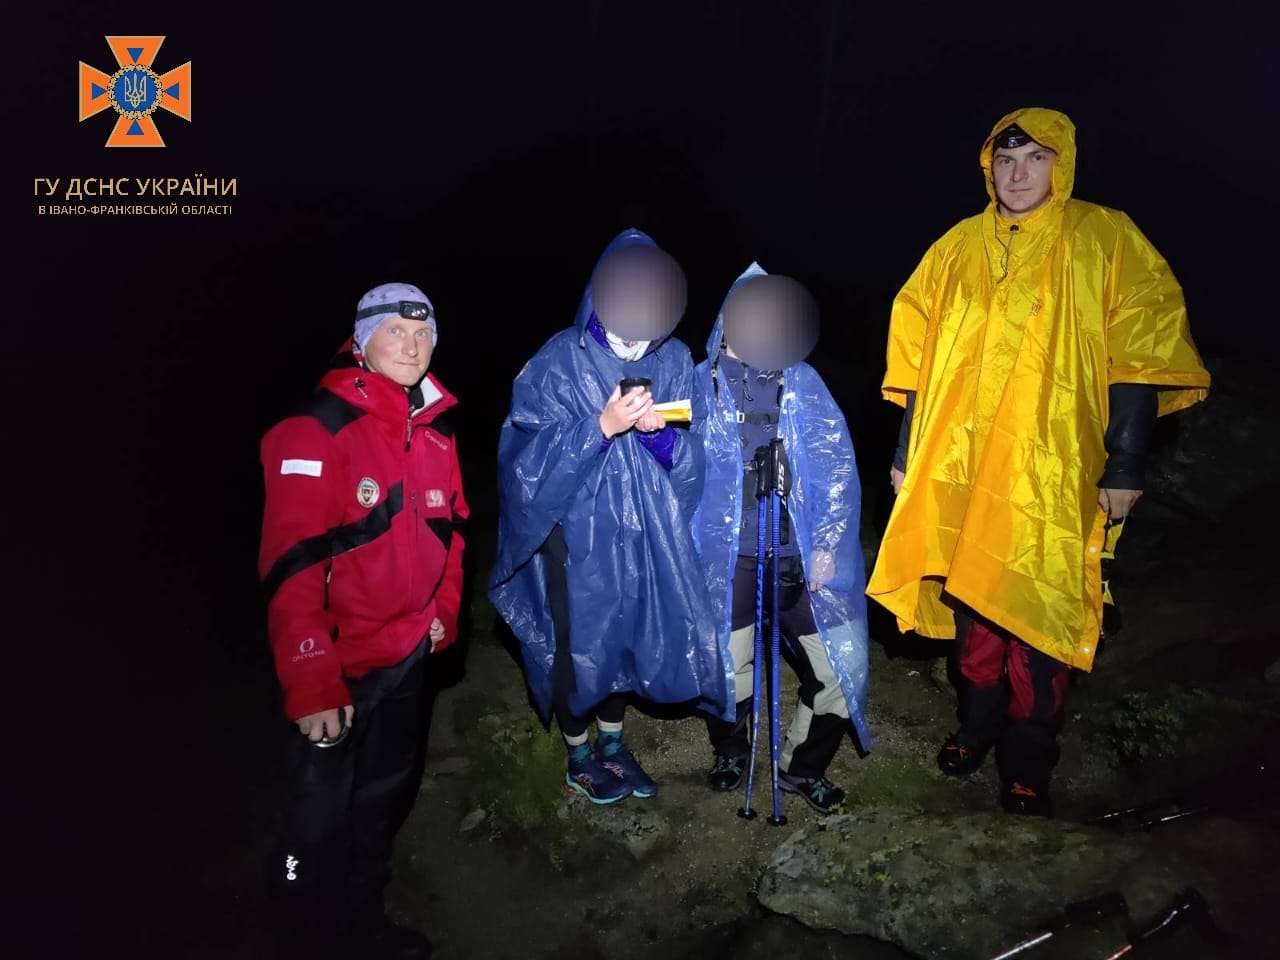 “Порятунок у горах”: заблукалих у Карпатах туристок знайшли за допомогою мобільного додатку (ФОТОФАКТ)